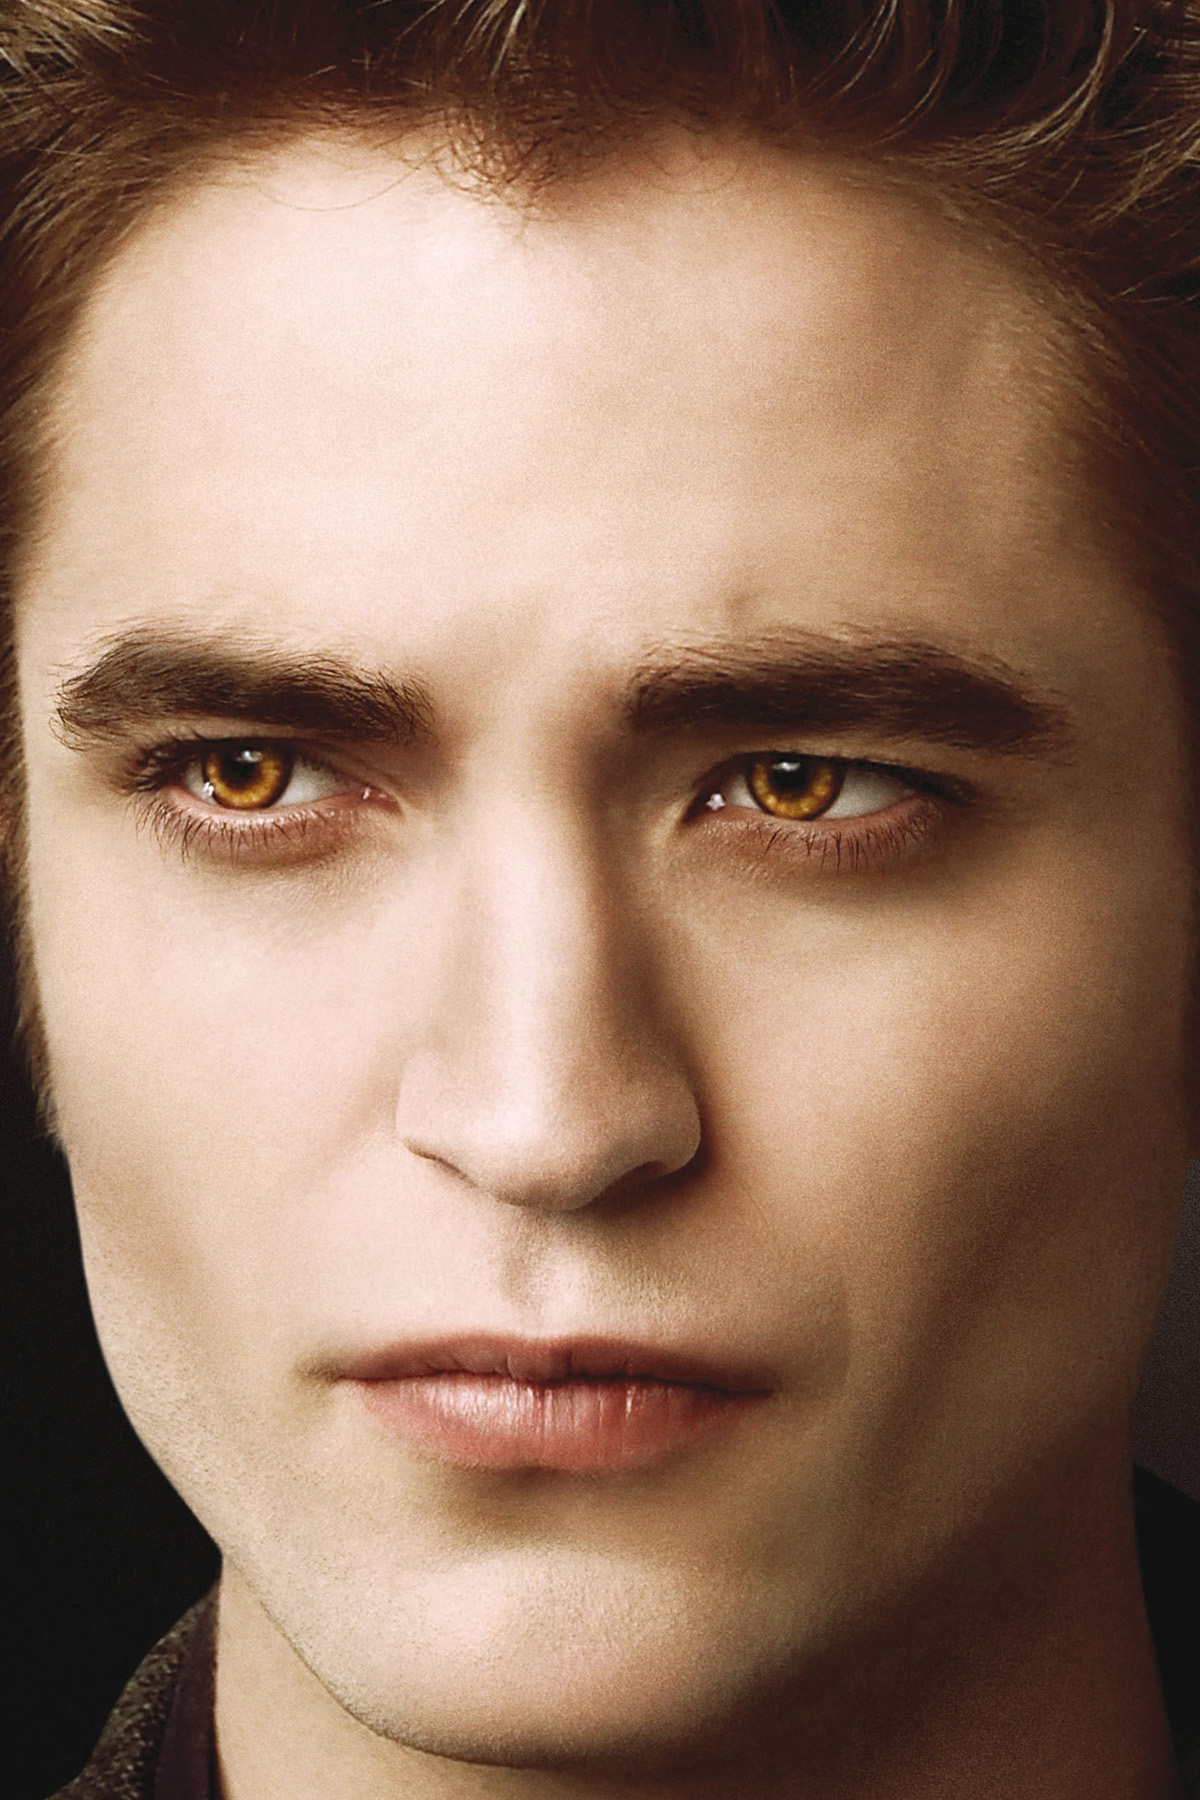 Robert Pattinson in The Twilight Saga: New Moon